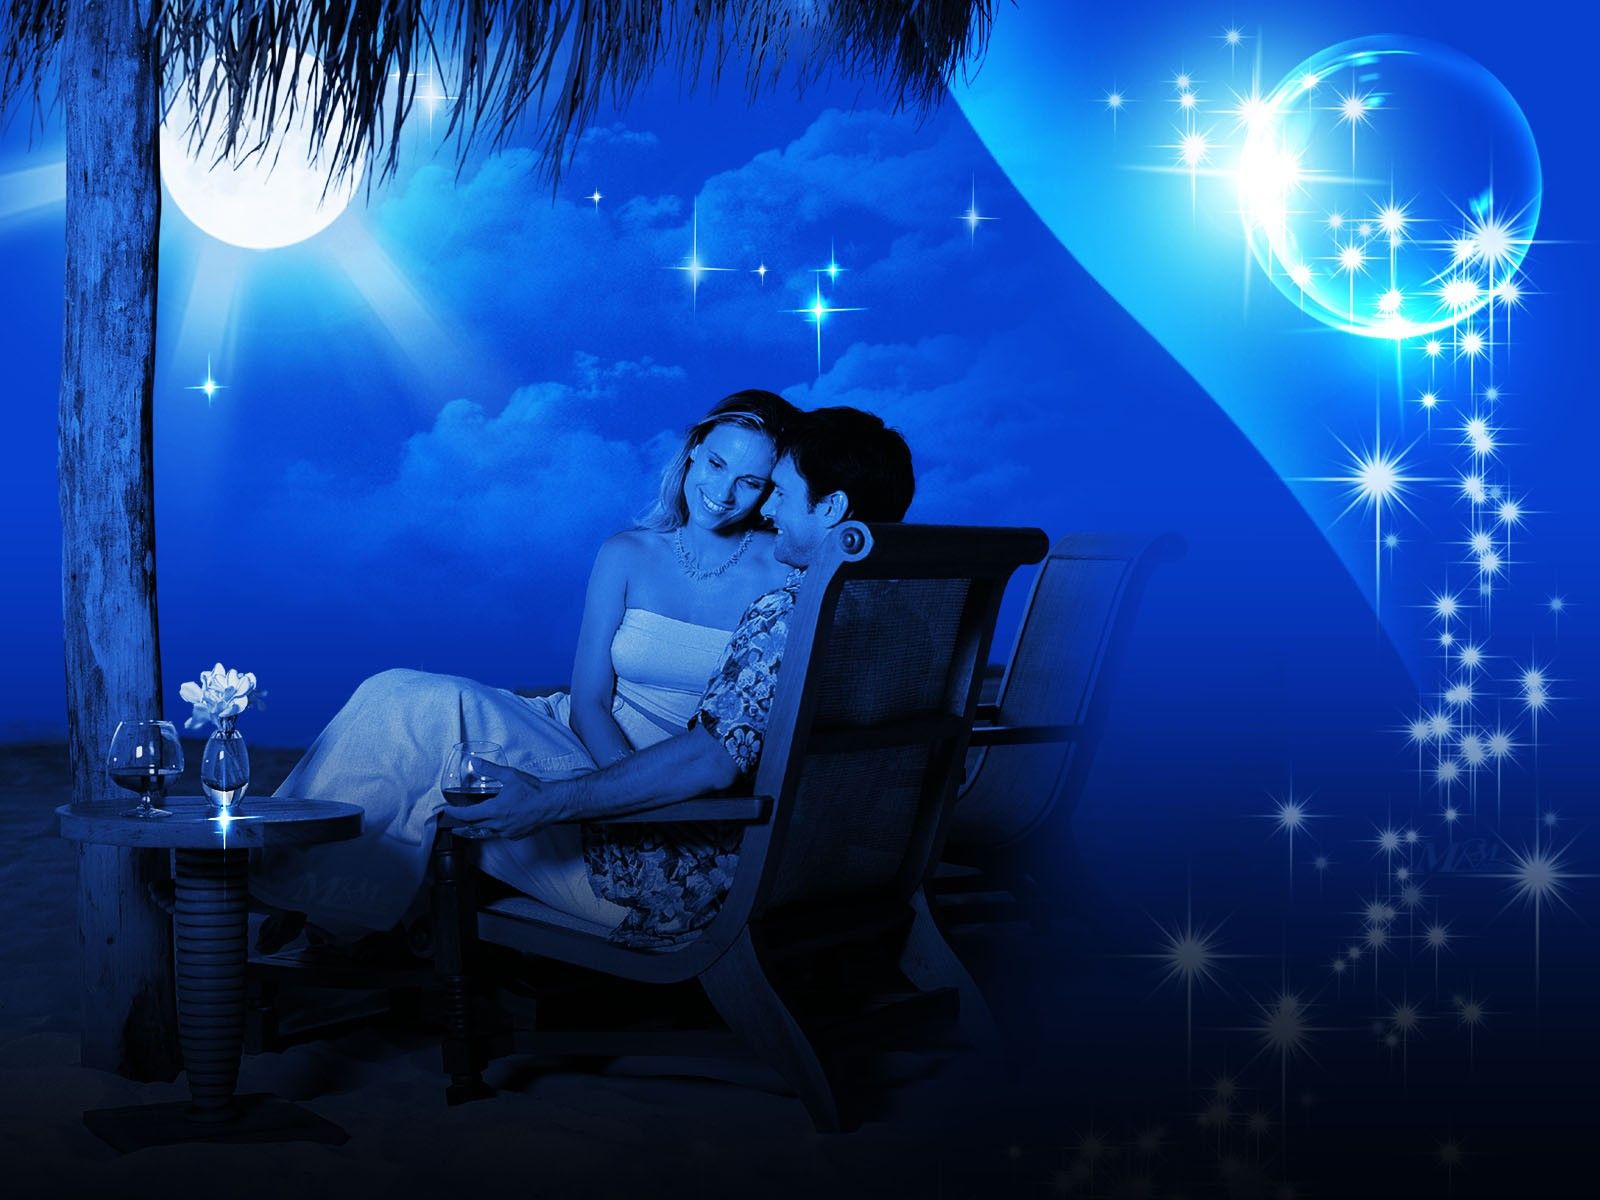 Top 150+ Beautiful Cute Romantic Love Couple HD Wallpaper